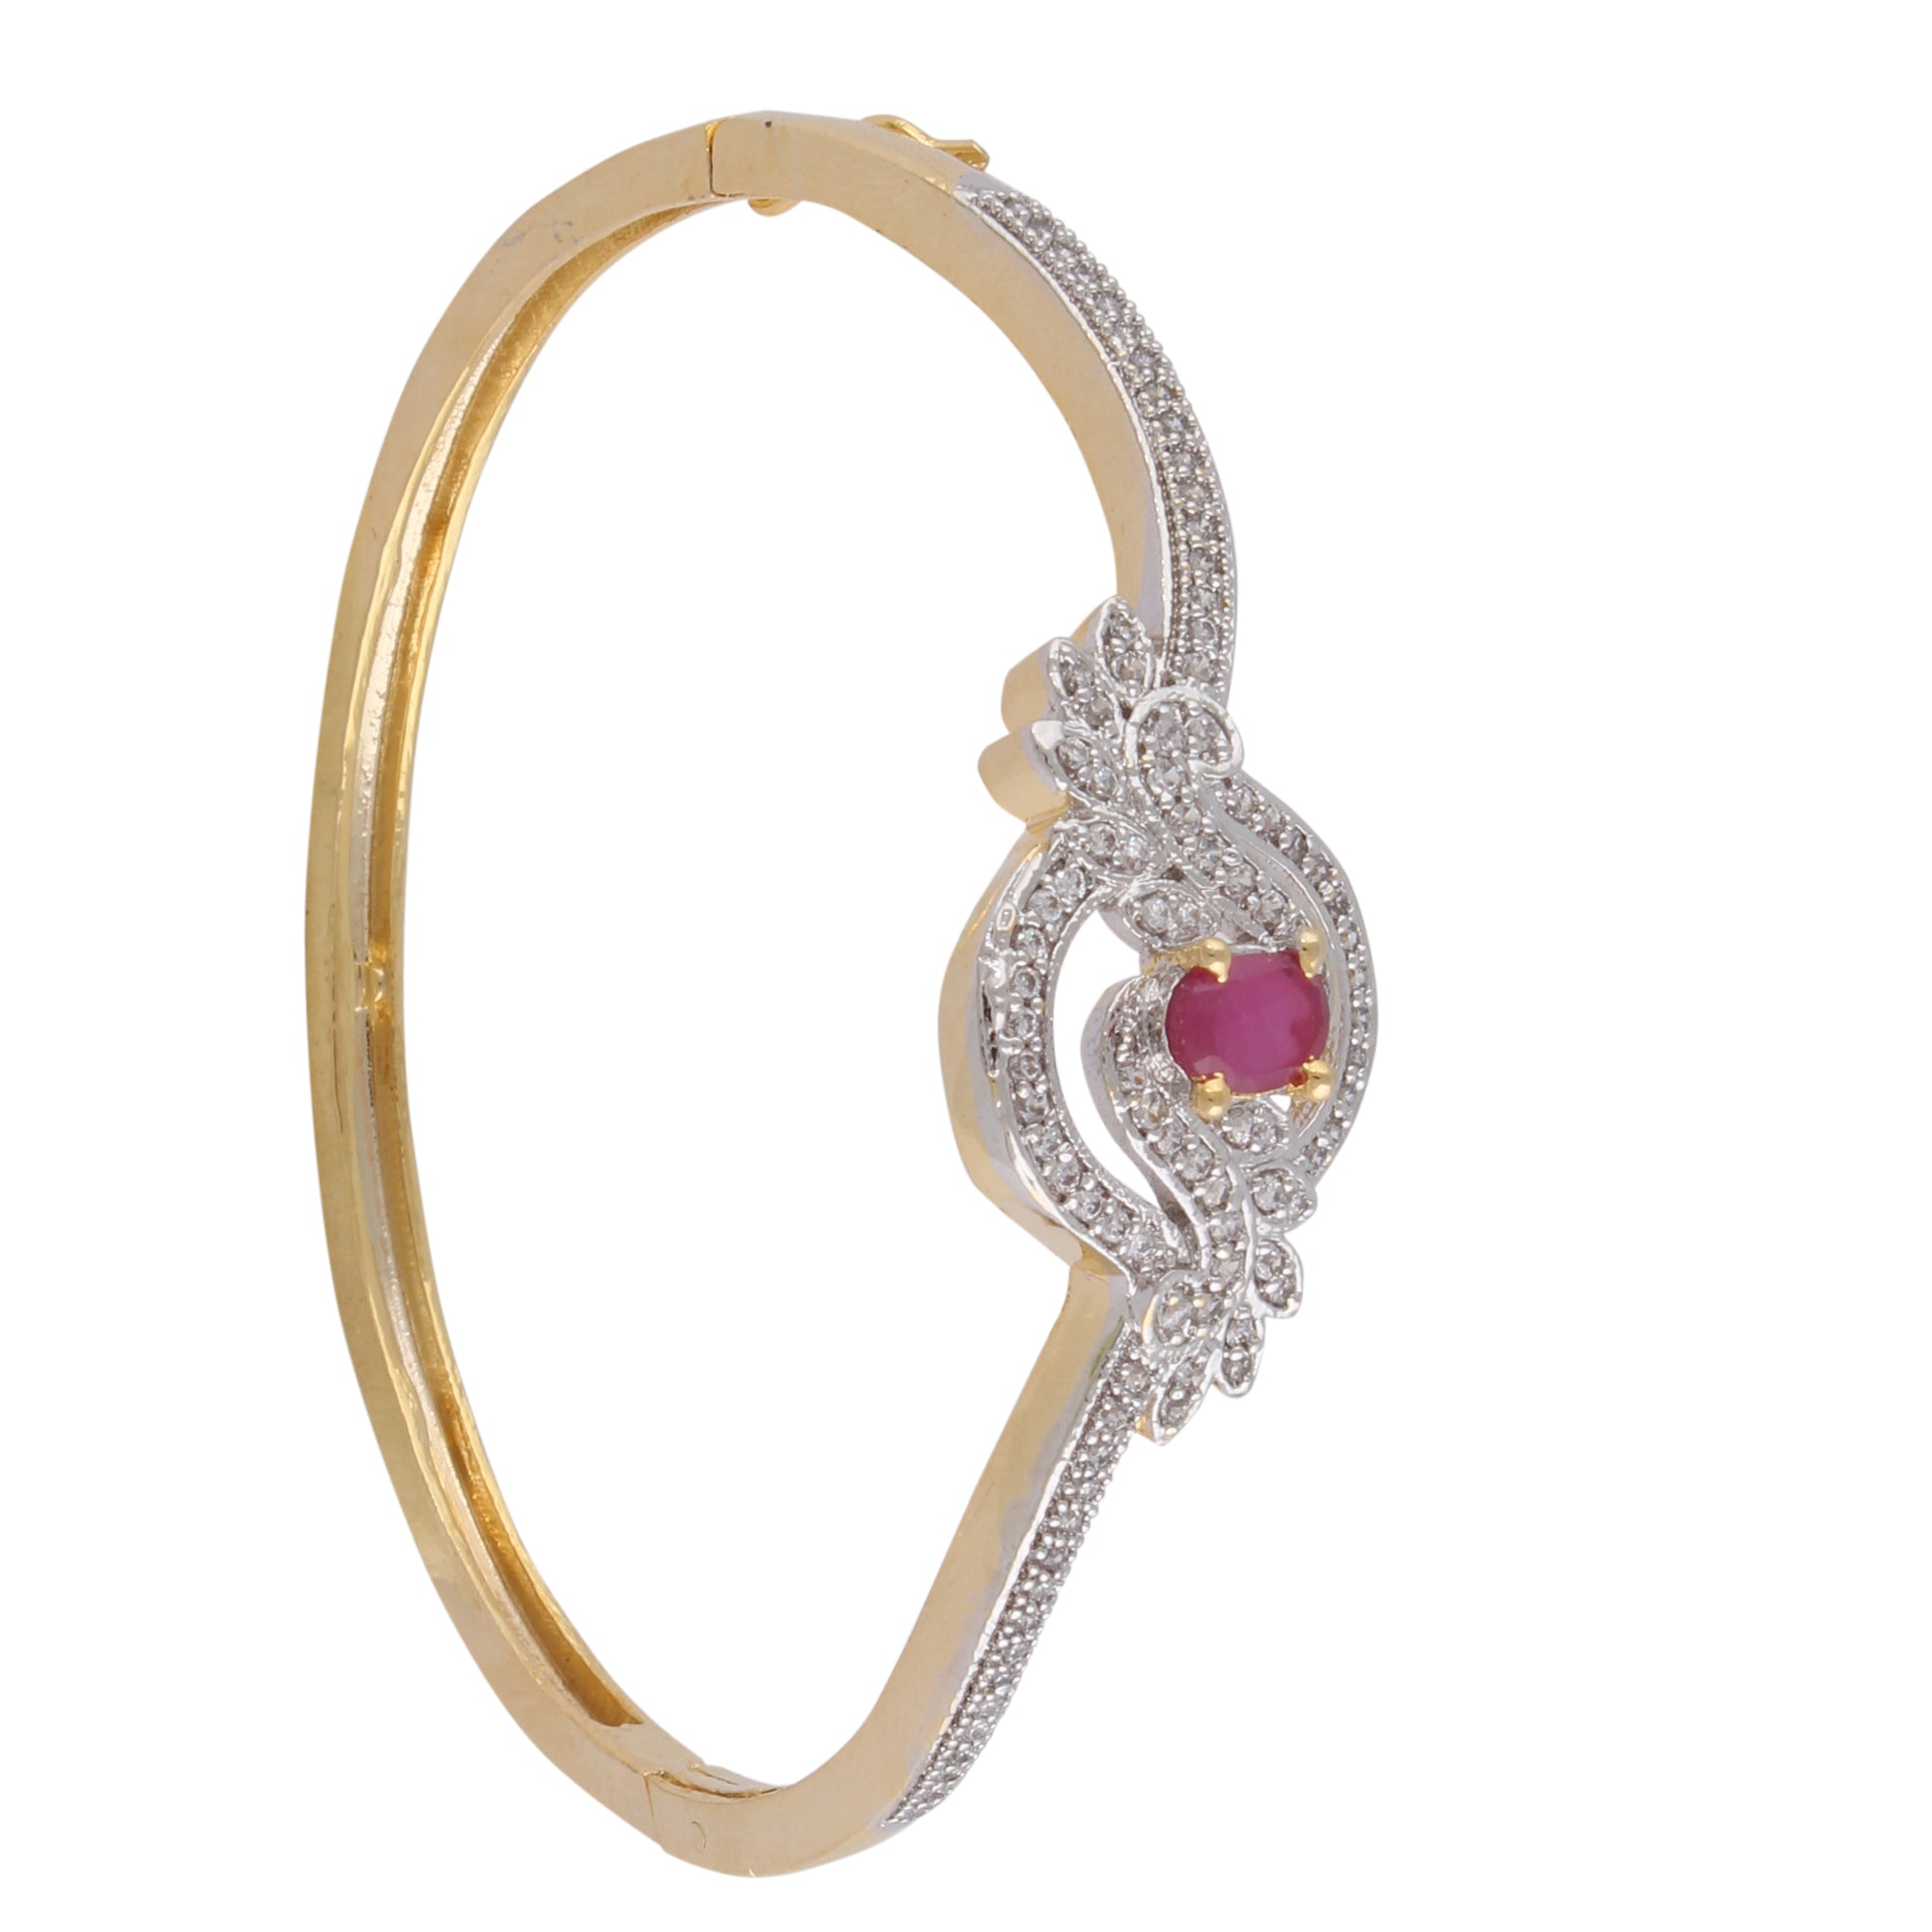 Indian Jewellery from Meira Jewellery:Bracelet,Meira Jewellery Bracelet with  Red Ruby and American melee diamonds for Women